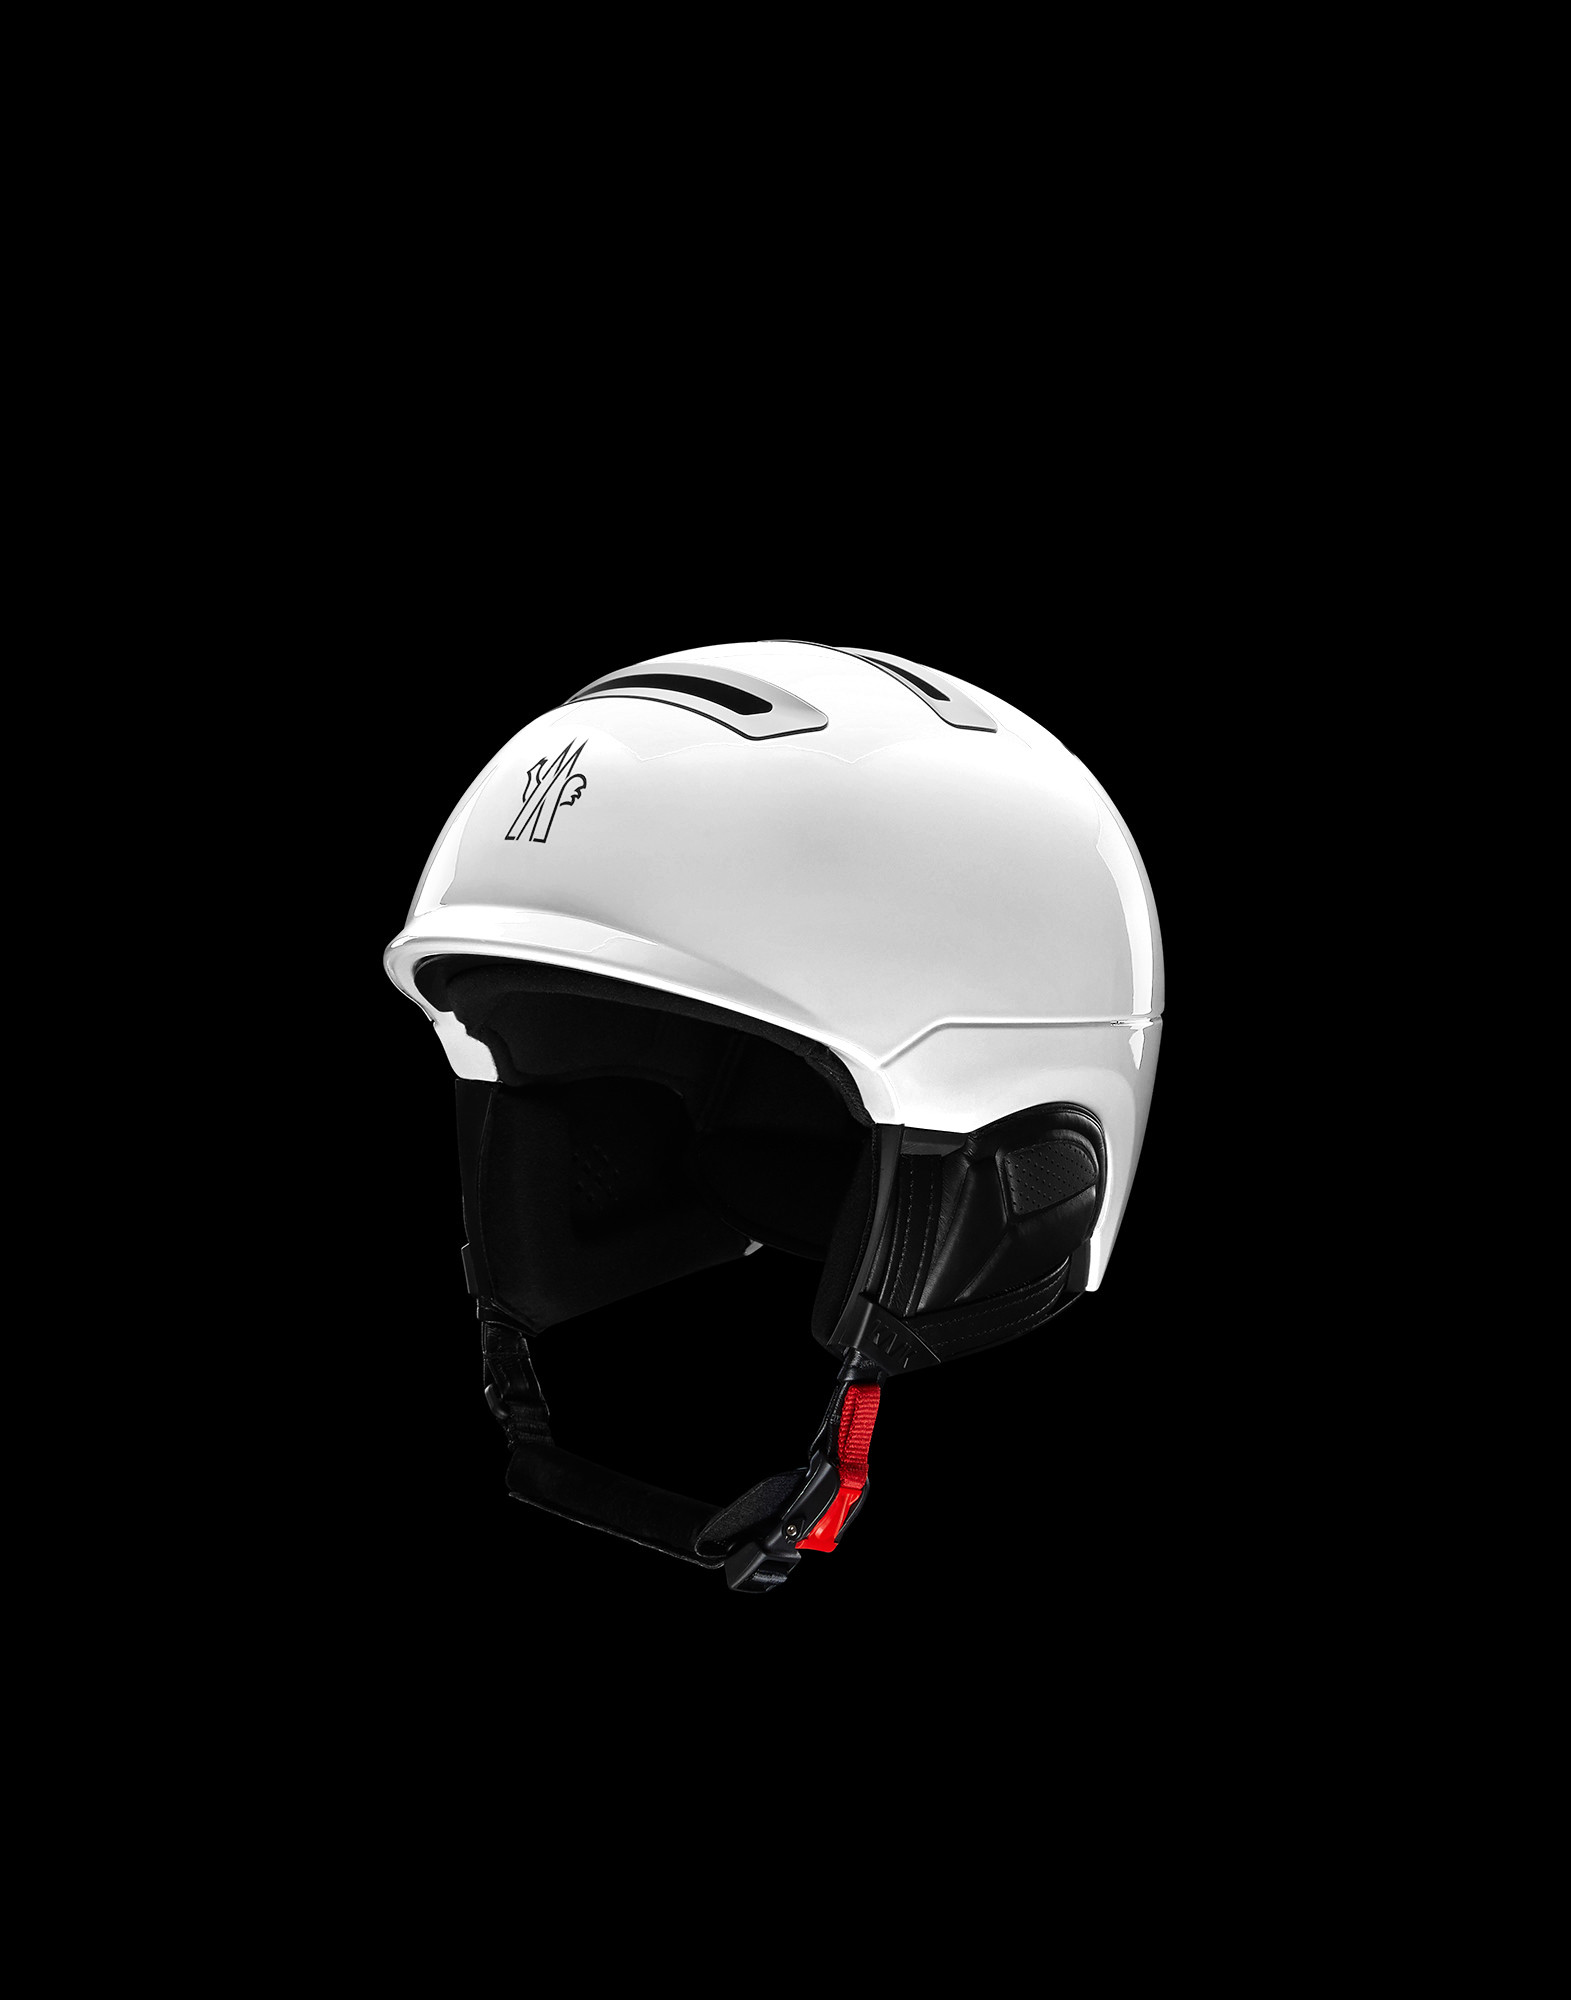 moncler ski helmet review